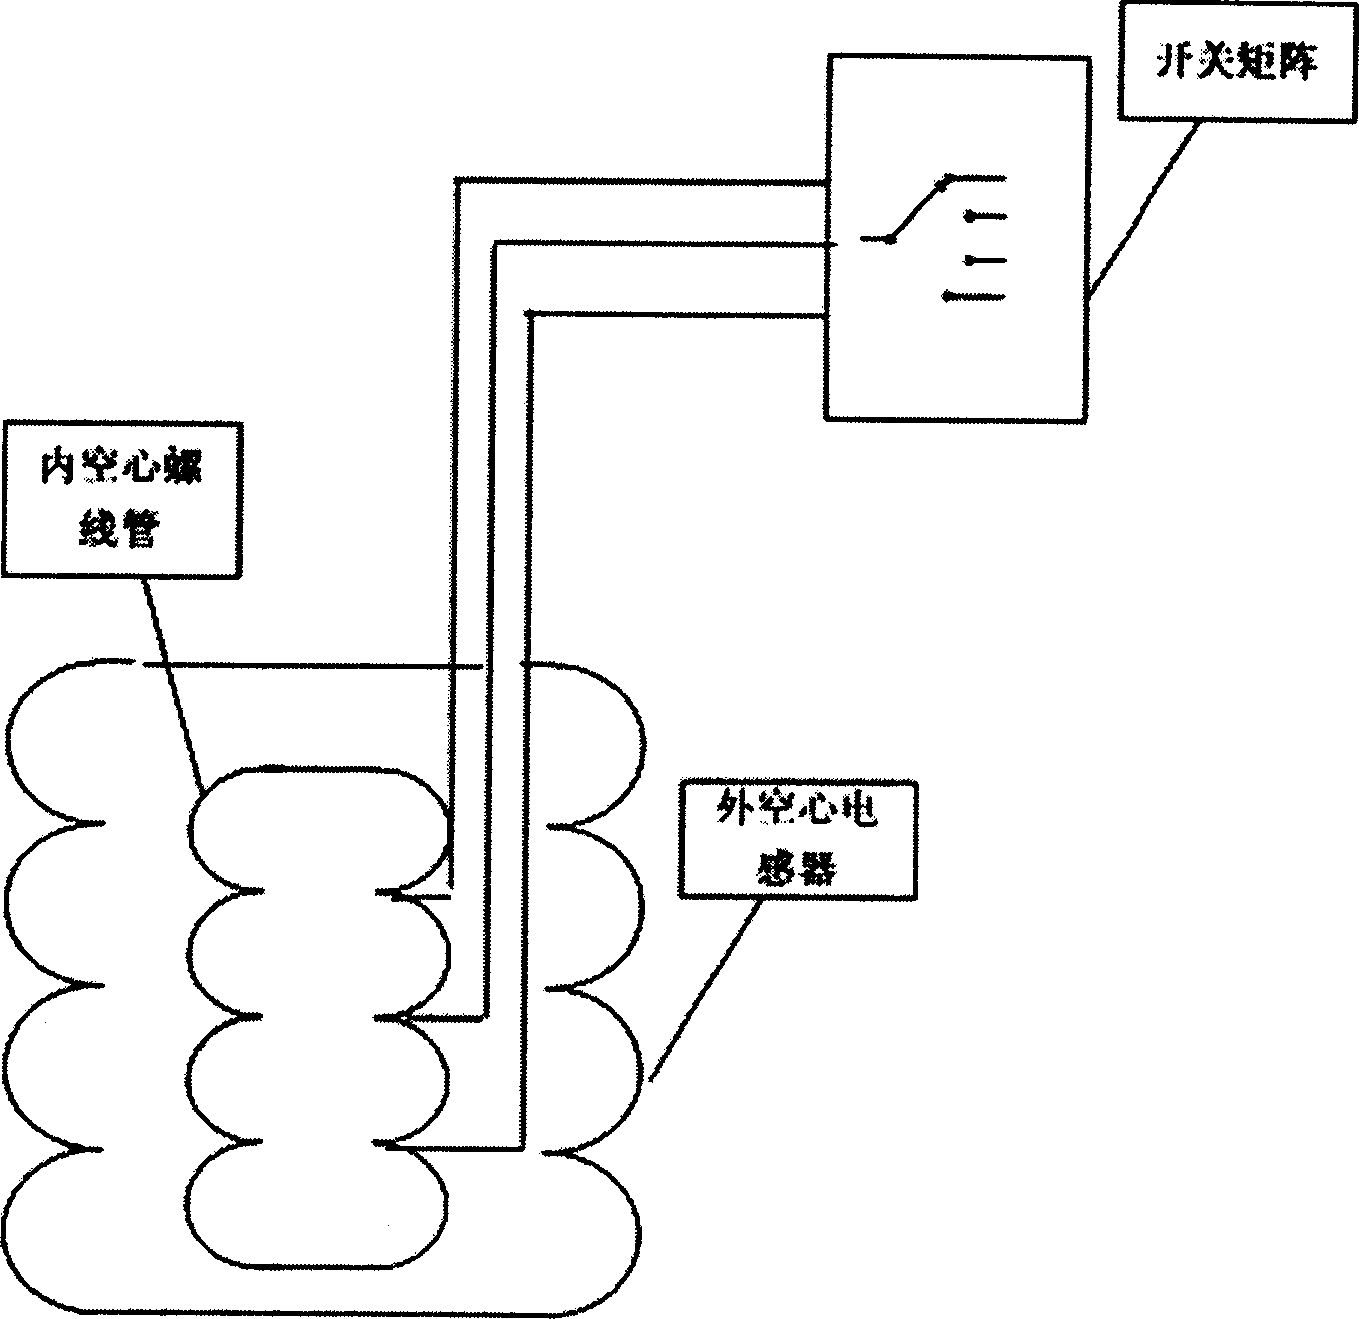 Non-contact controllable reactor